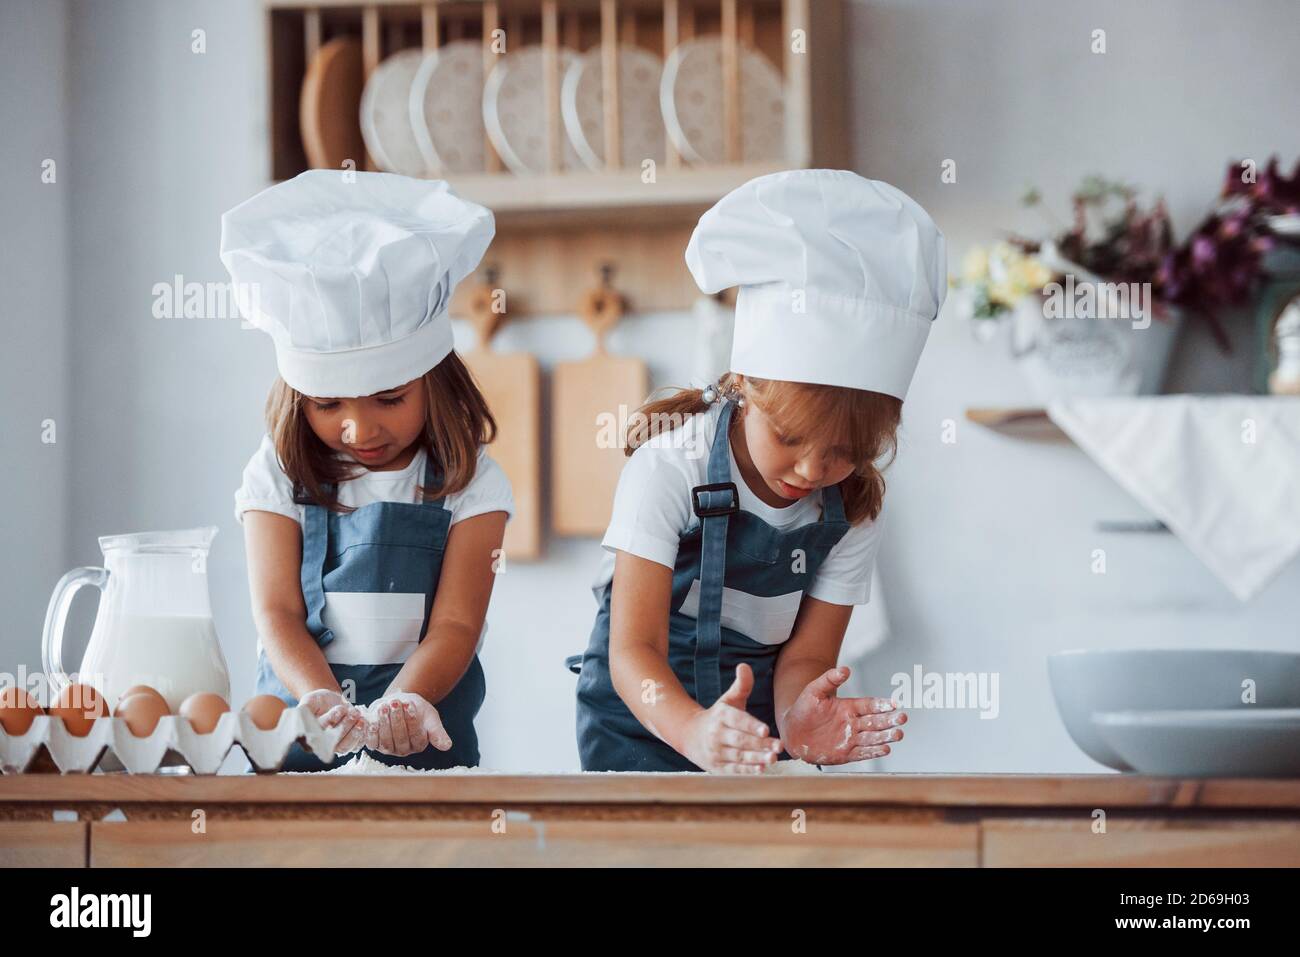 Los niños de la familia en el uniforme blanco del chef preparando la comida en el cocina de stock - Alamy